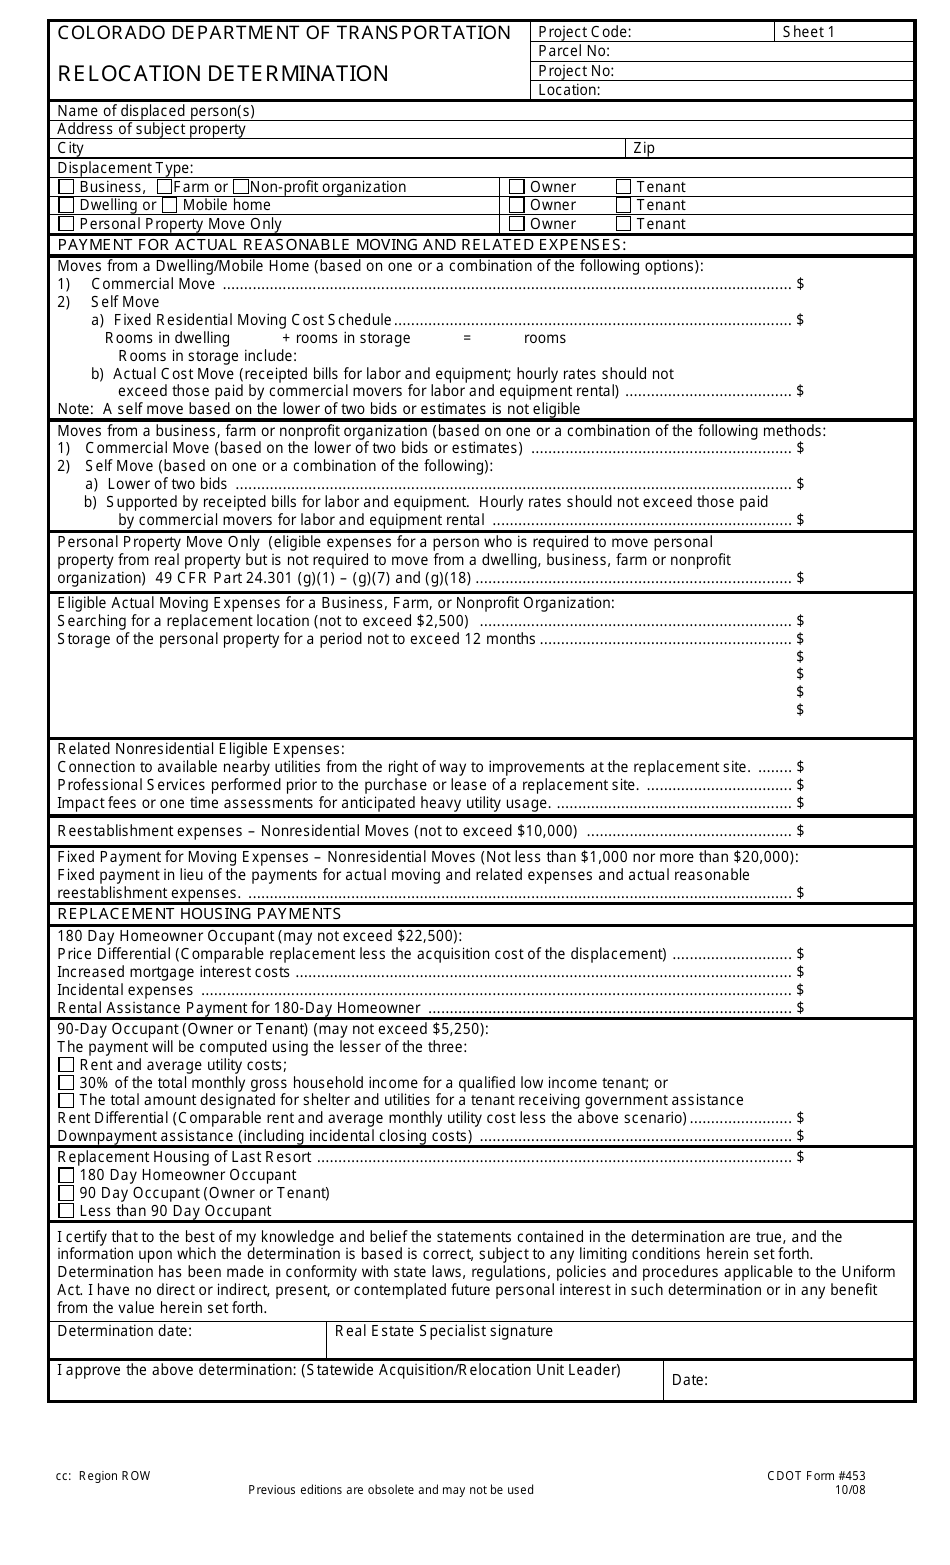 CDOT Form 453 Relocation Determination - Colorado, Page 1